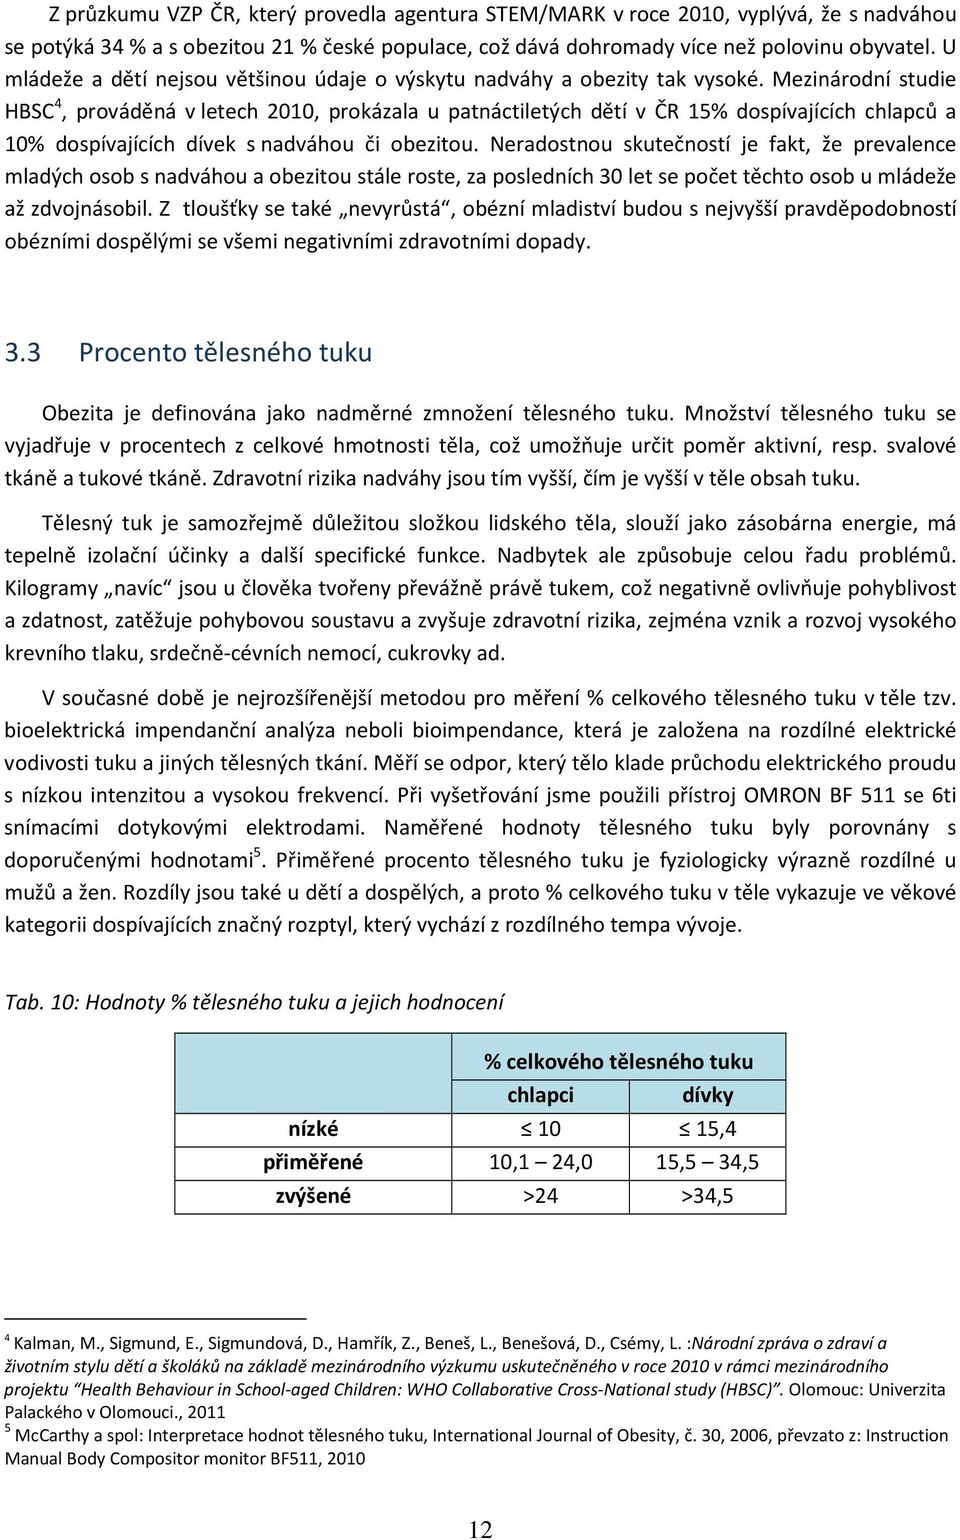 Mezinárodní studie HBSC 4, prováděná v letech 2010, prokázala u patnáctiletých dětí v ČR 15% dospívajících chlapců a 10% dospívajících dívek s nadváhou či obezitou.